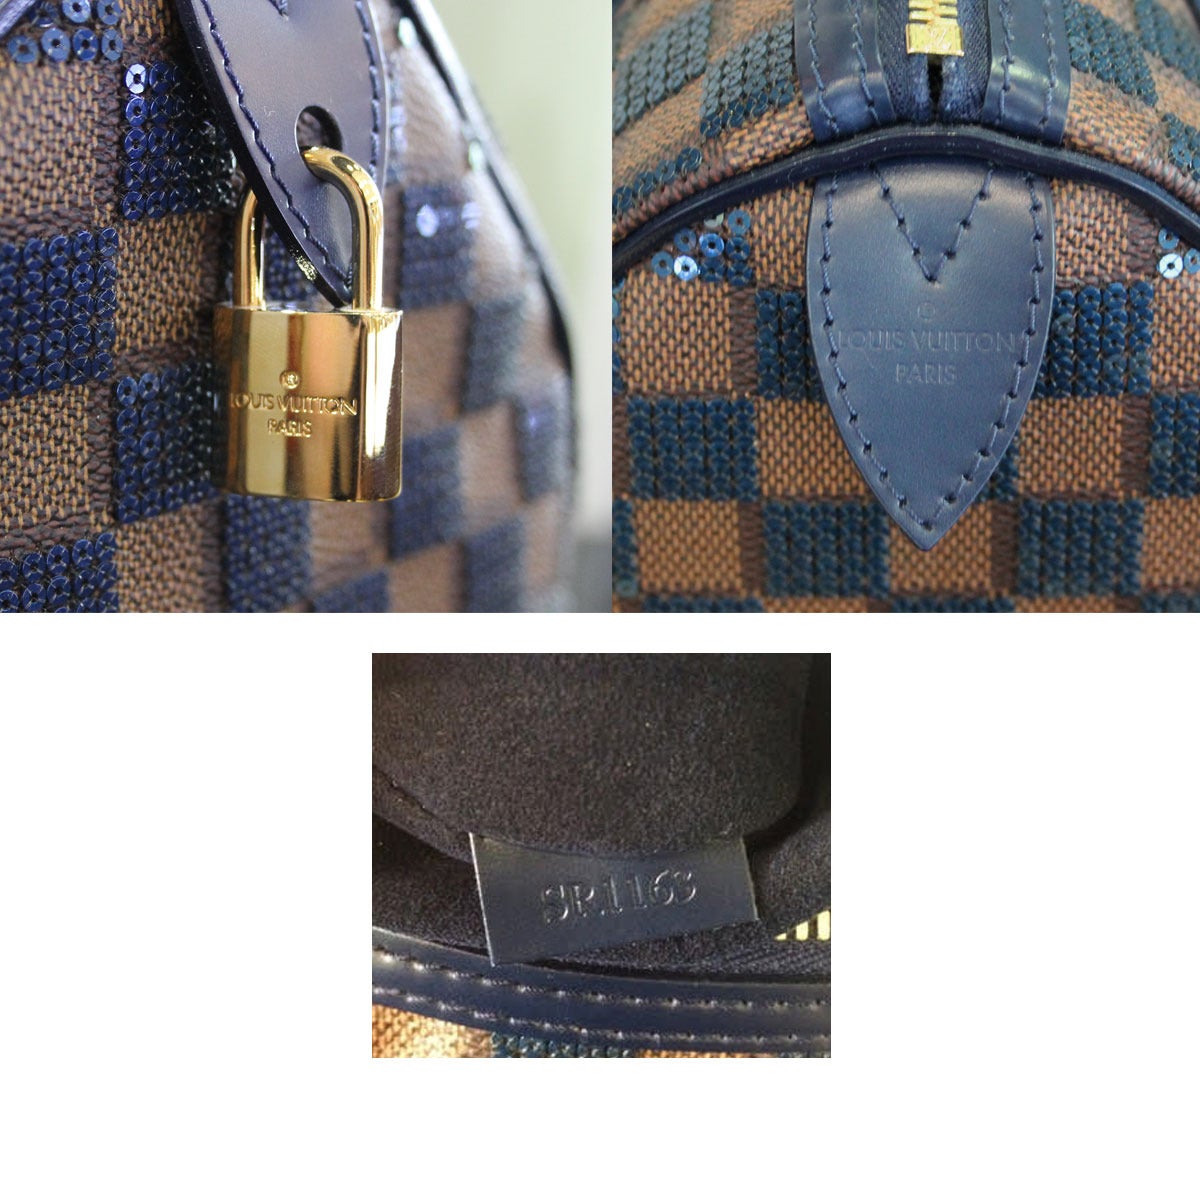 Louis Vuitton, Bags, Louis Vuitton Damier Paillettes Sequin Blue